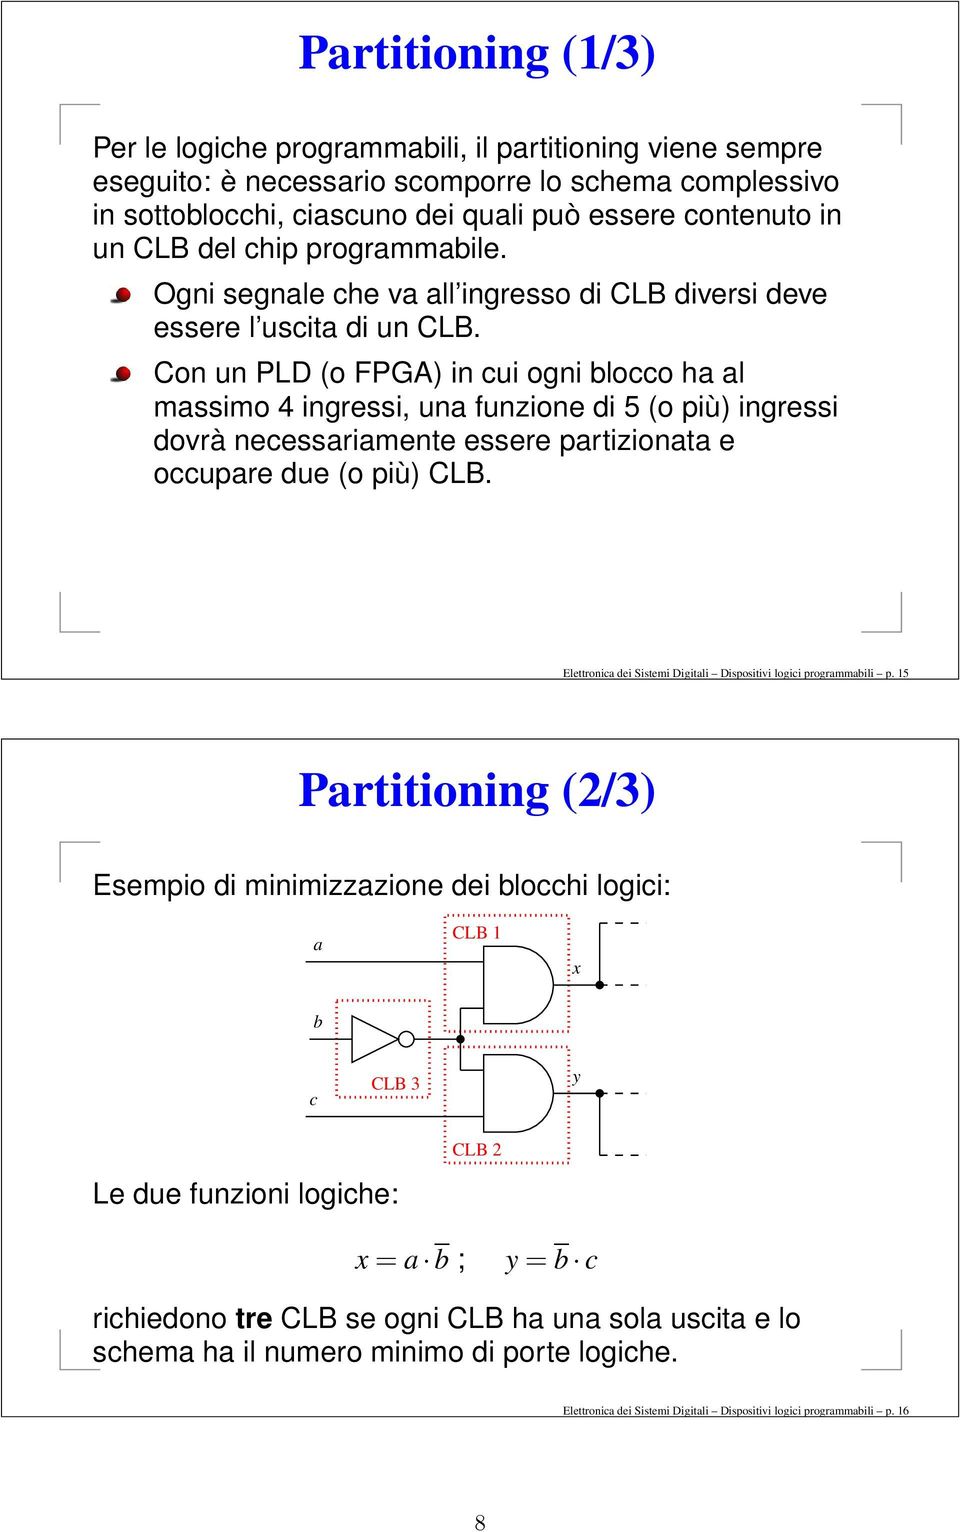 Con un PLD (o FPGA) in cui ogni blocco ha al massimo 4 ingressi, una funzione di 5 (o più) ingressi dovrà necessariamente essere partizionata e occupare due (o più) CLB.